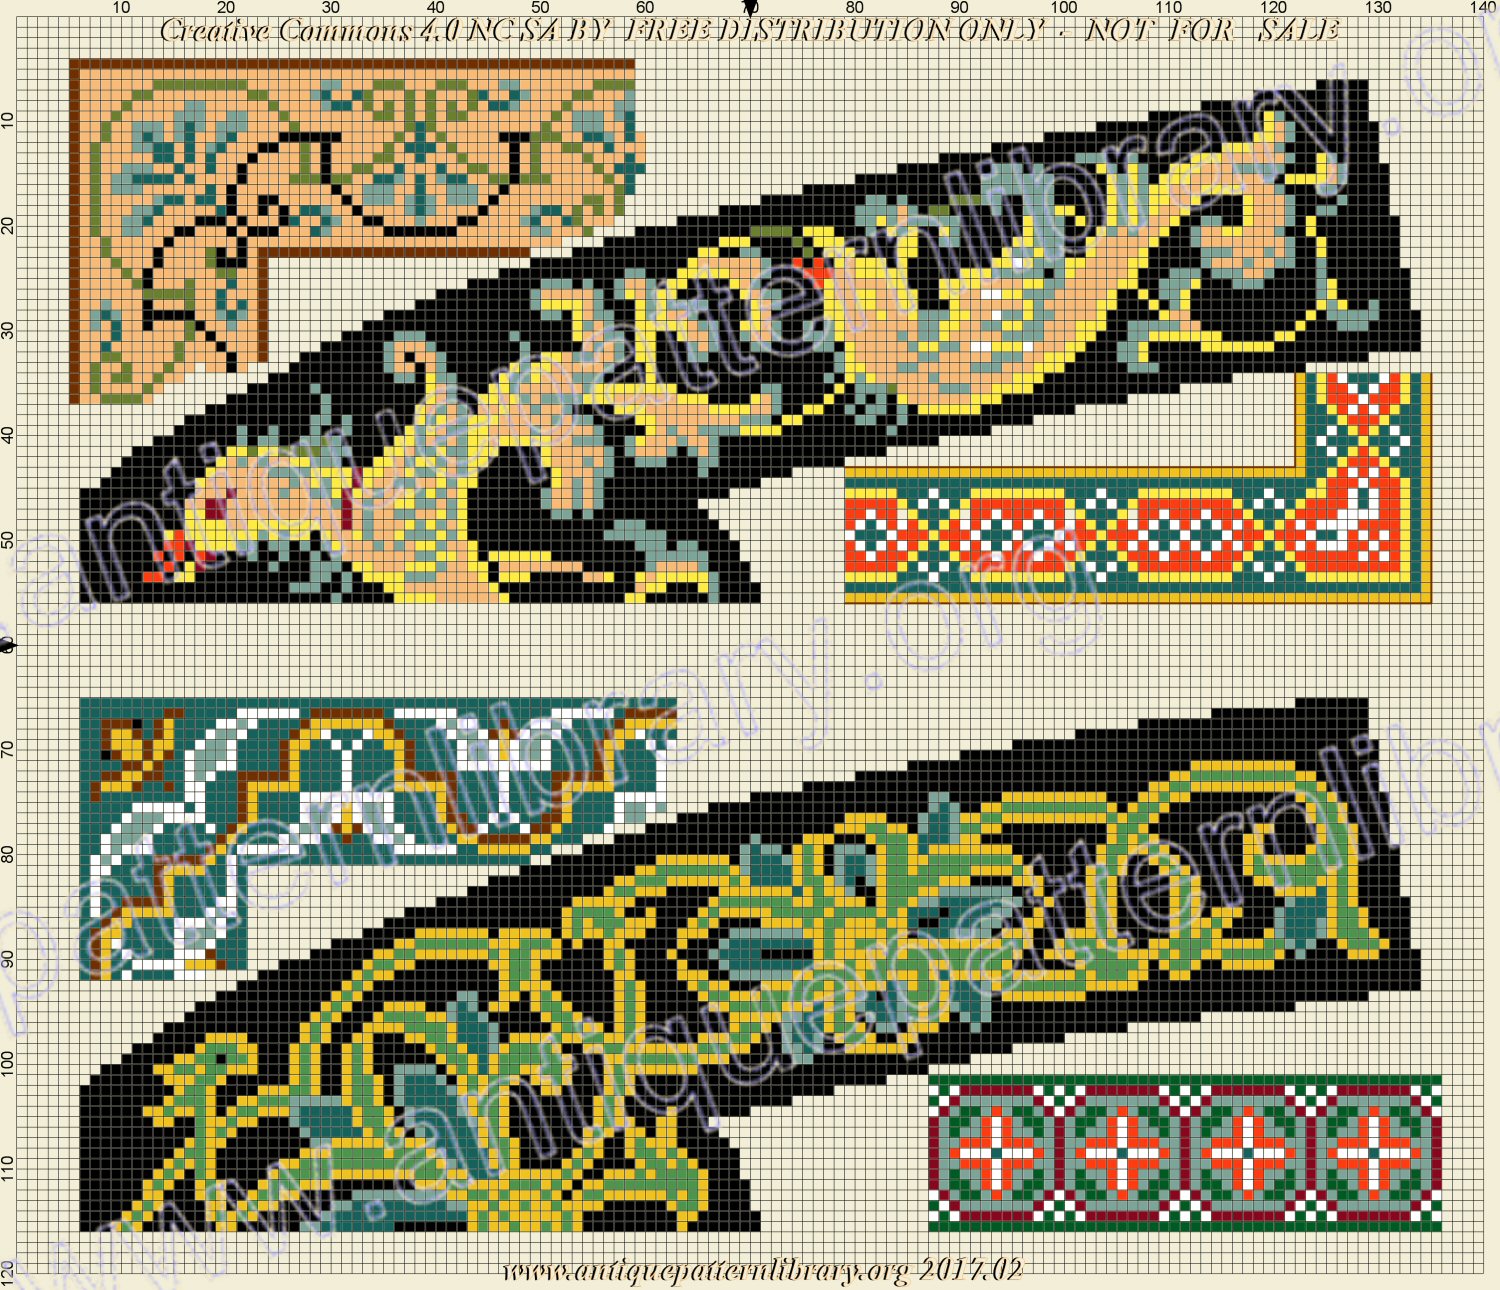 H-EU001 Embroidery patterns - Dessins de broderie - Neueste Stickvorlagen